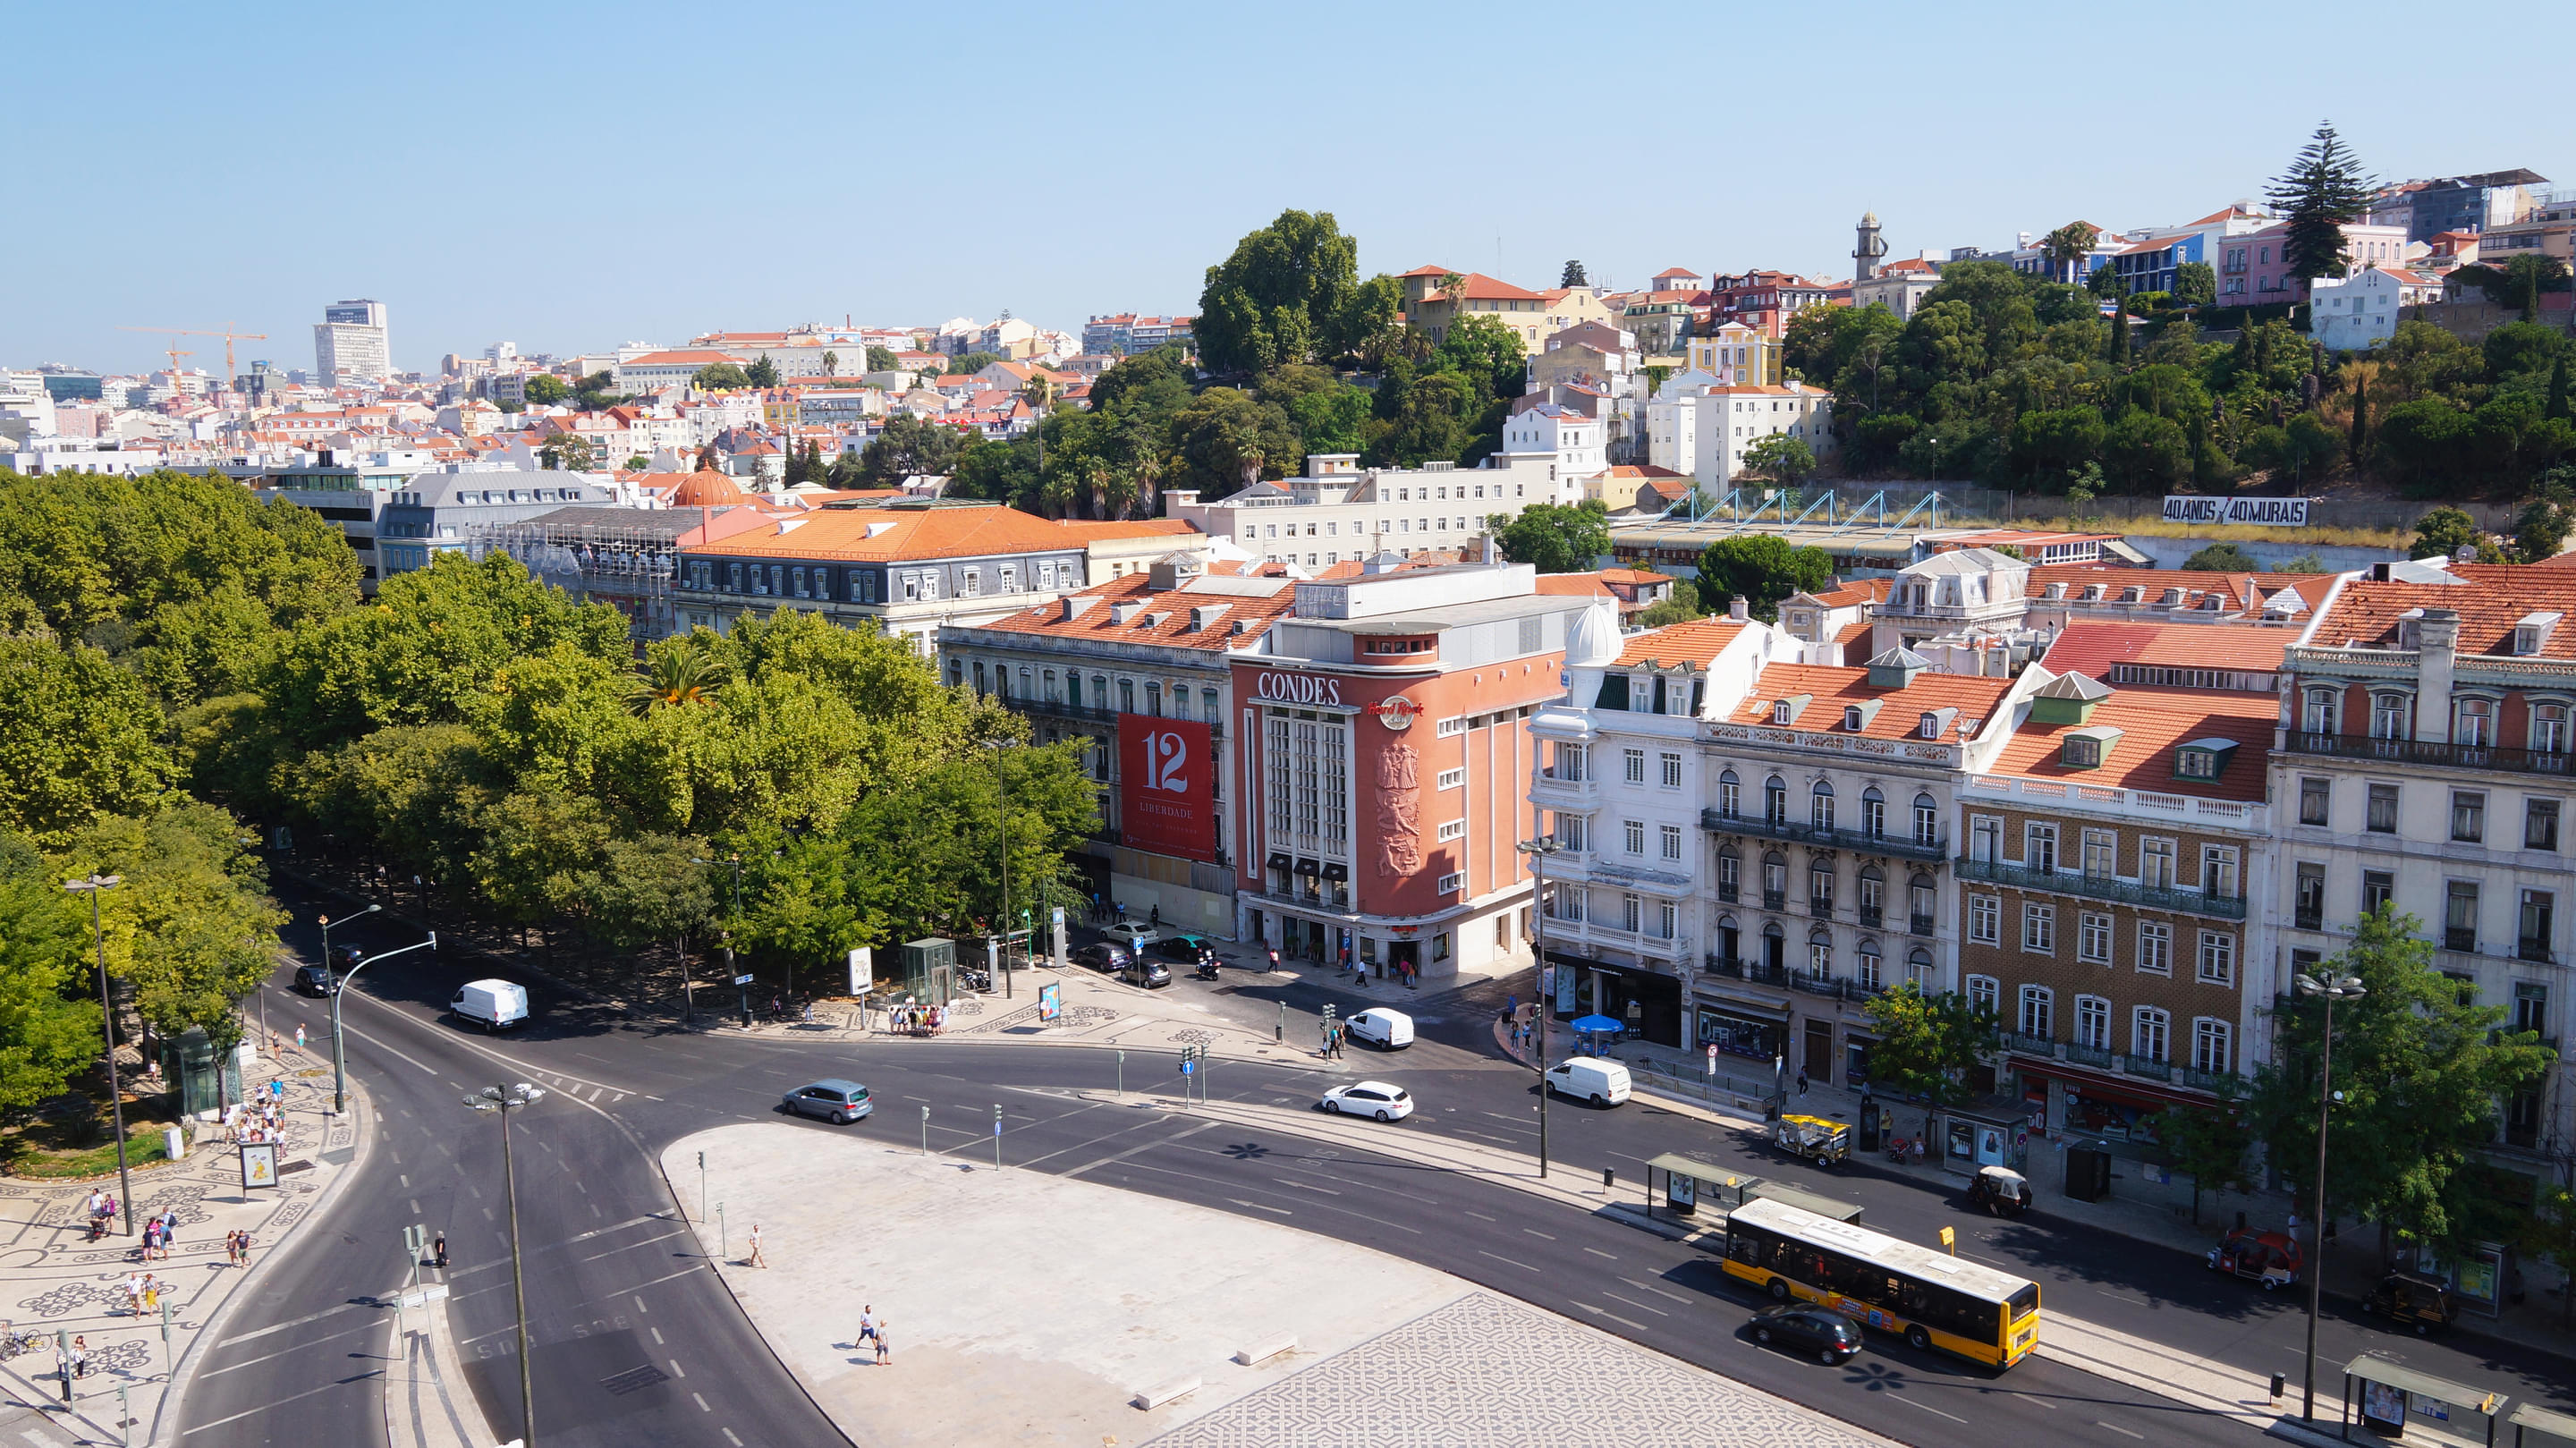 Restauradores Square, Lisbon Overview